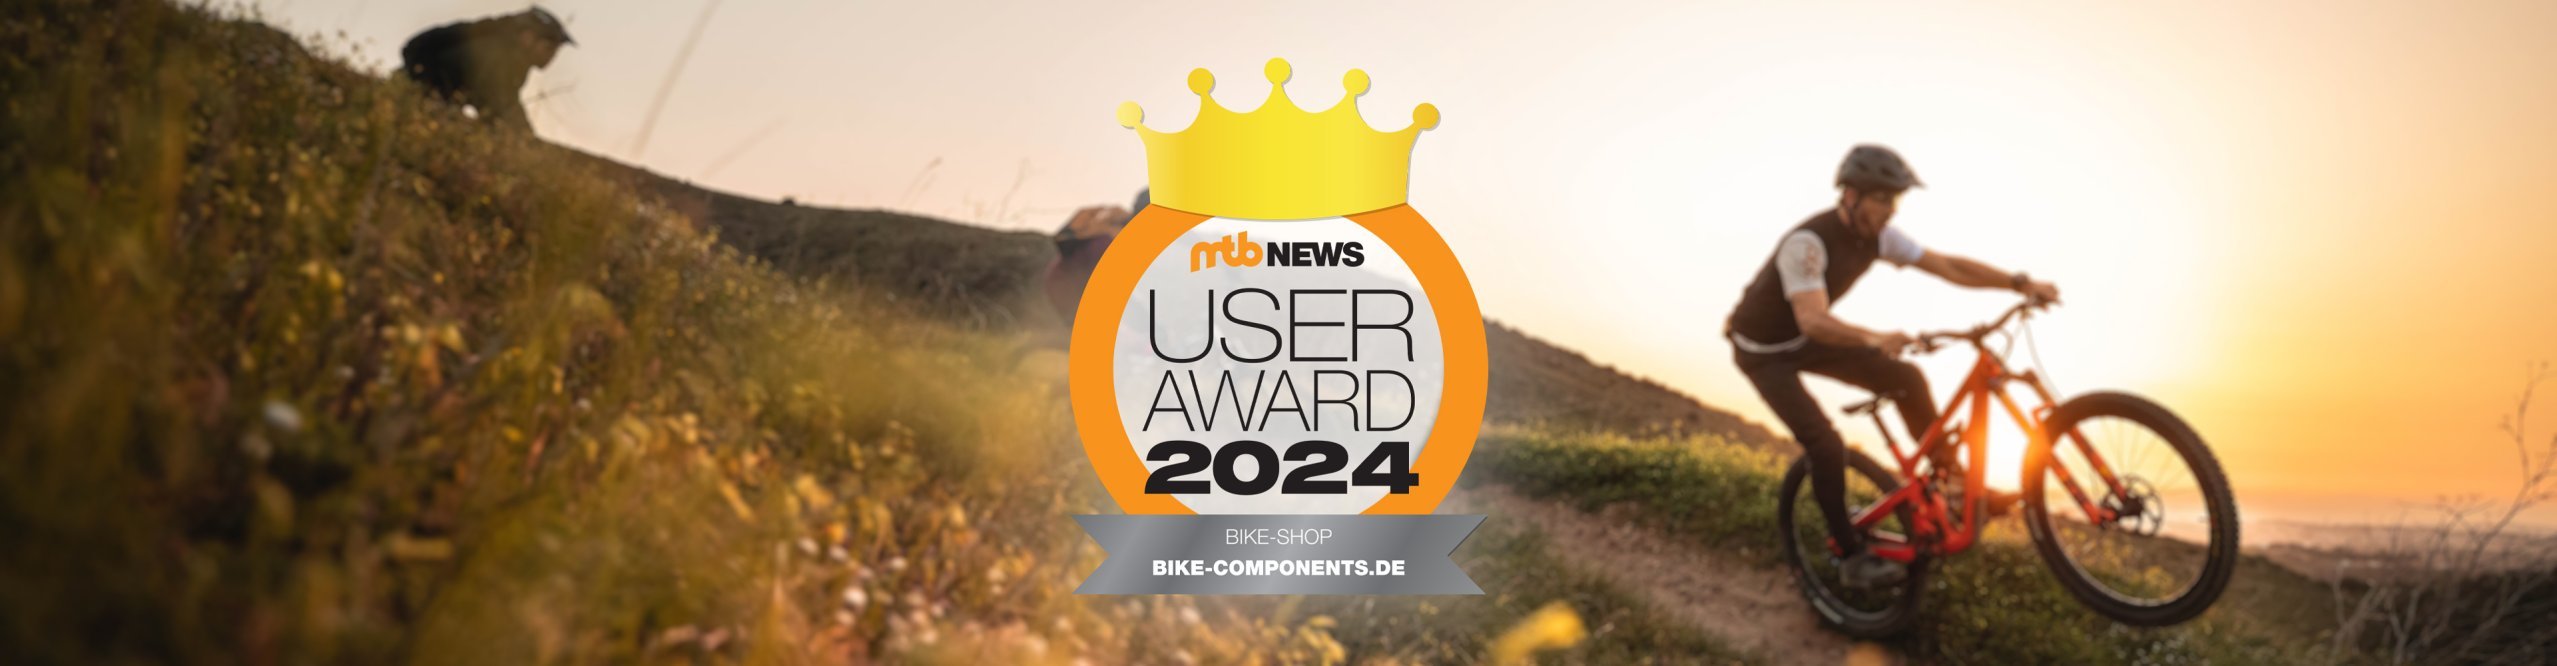 240216_mtb_news_award_2024_header_desktop.jpg